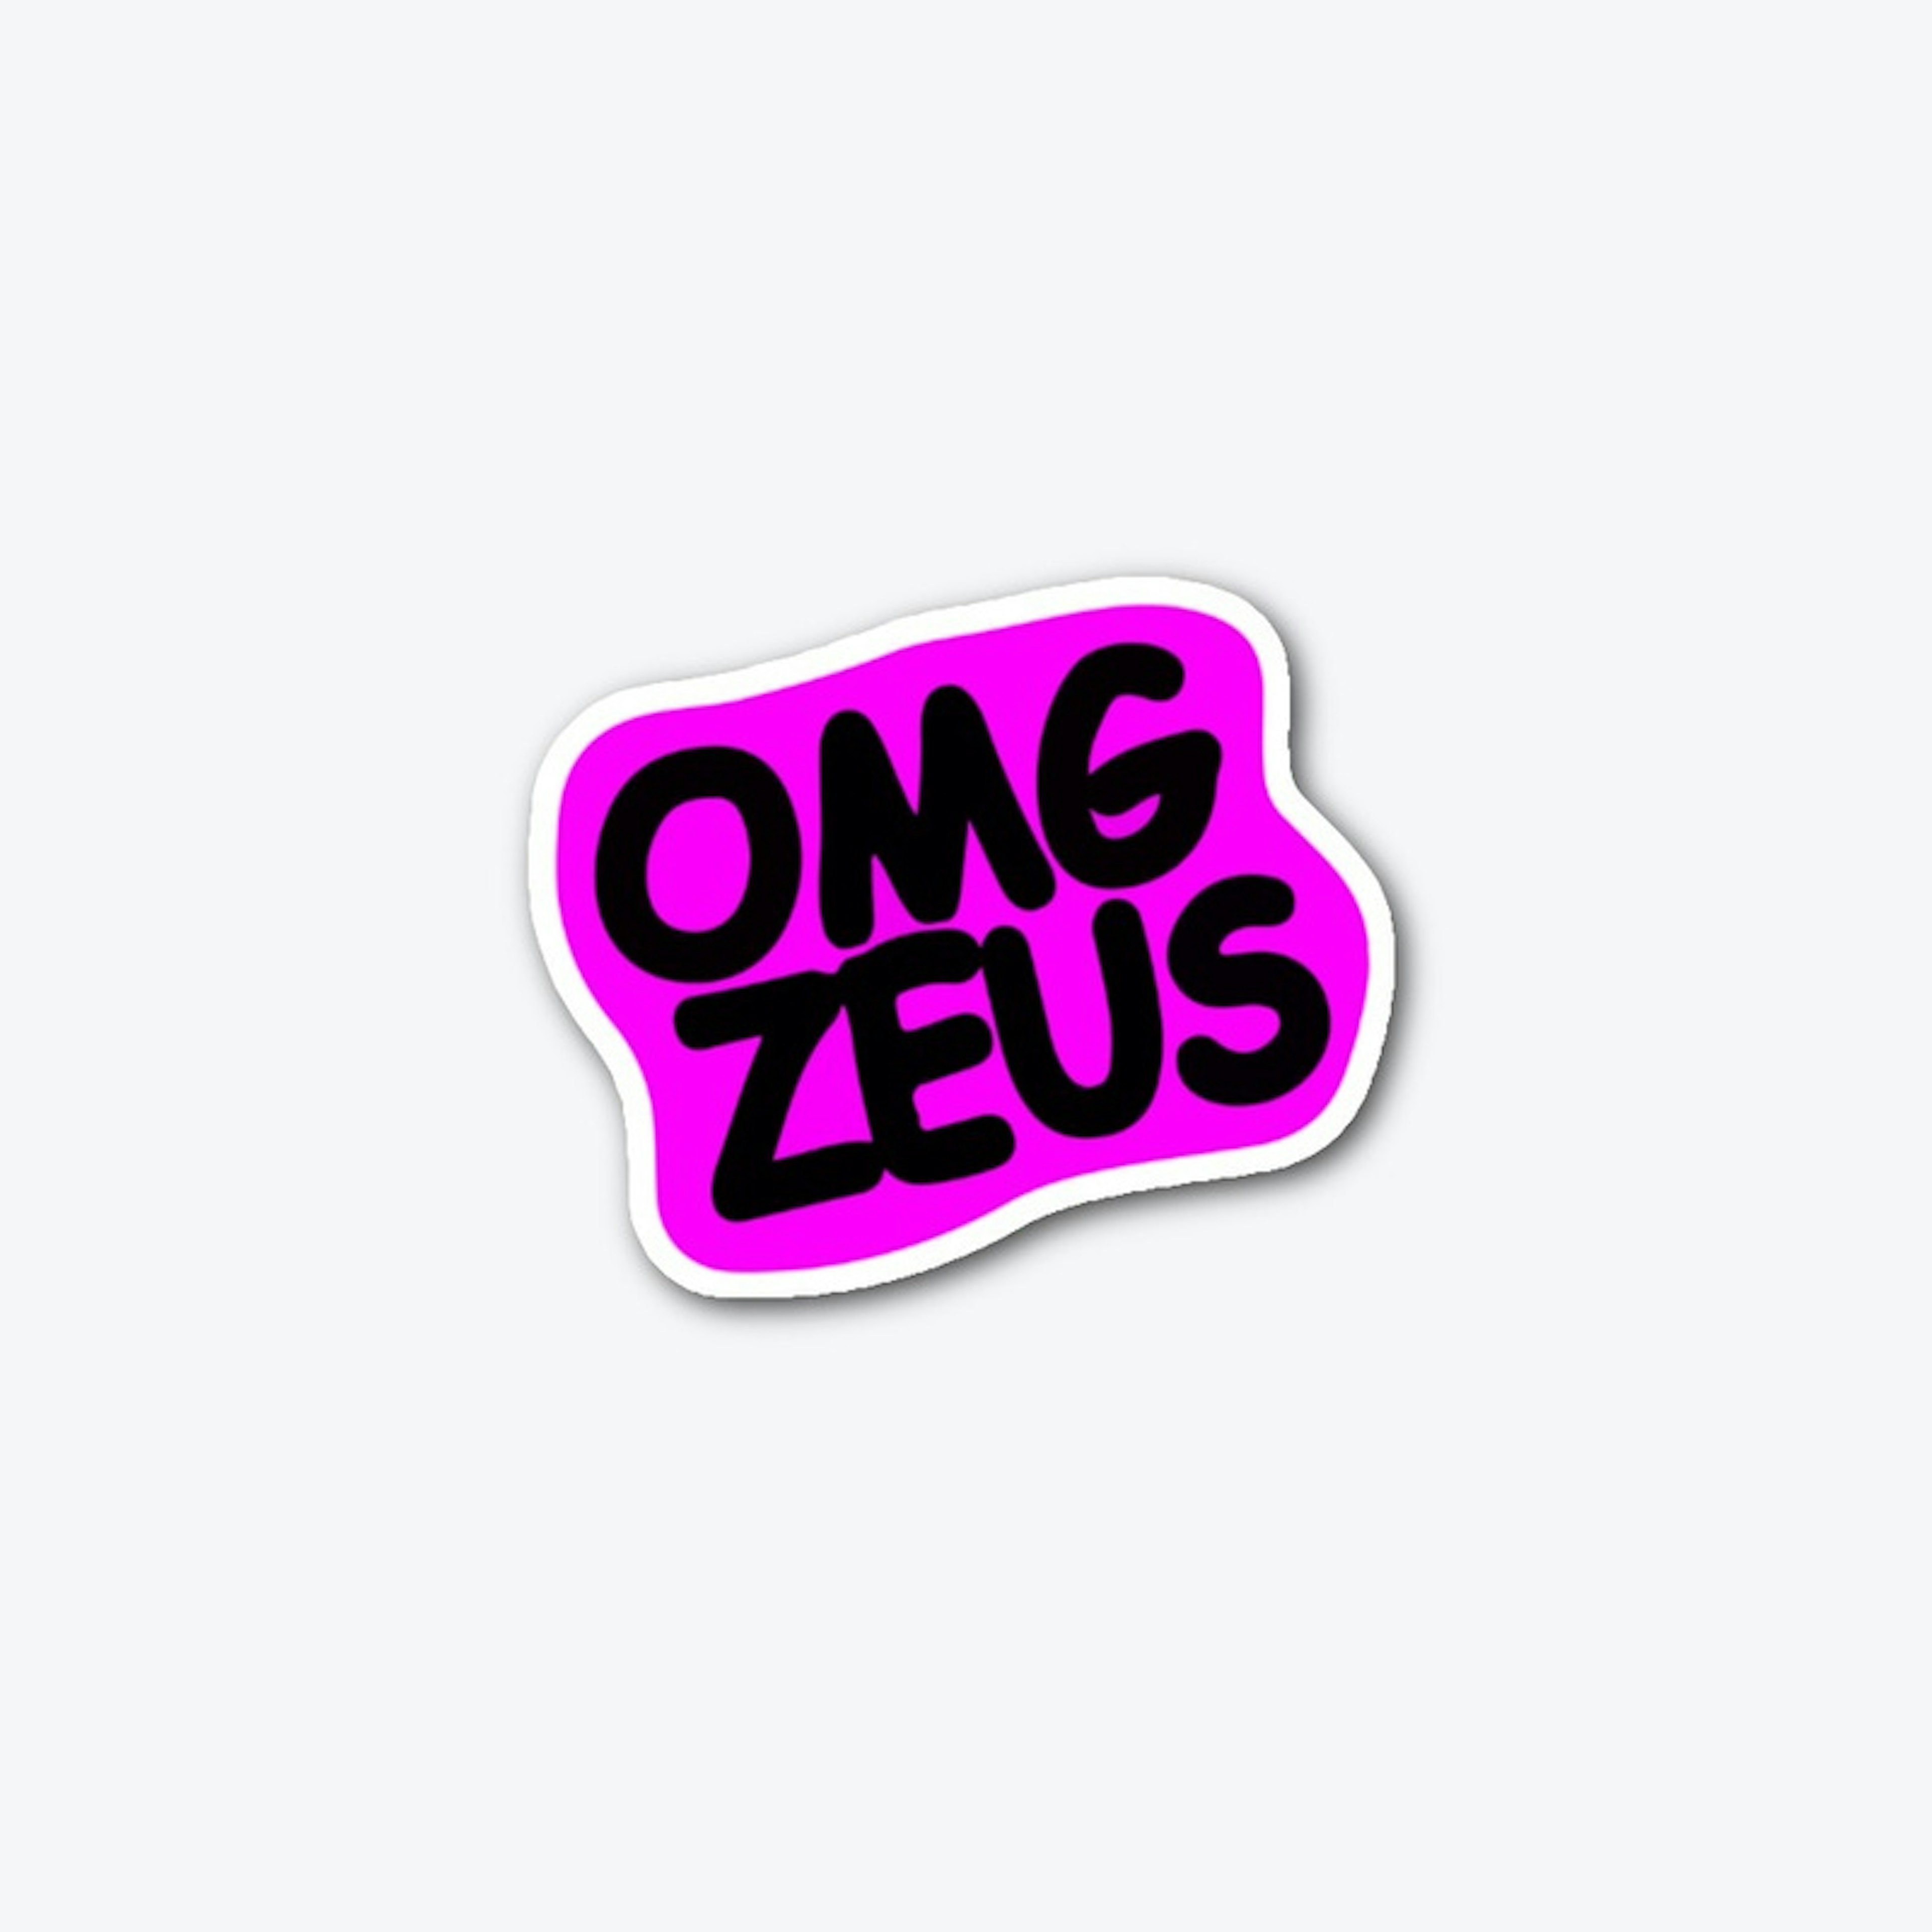 "Omg Zeus" - Die Cut Sticker